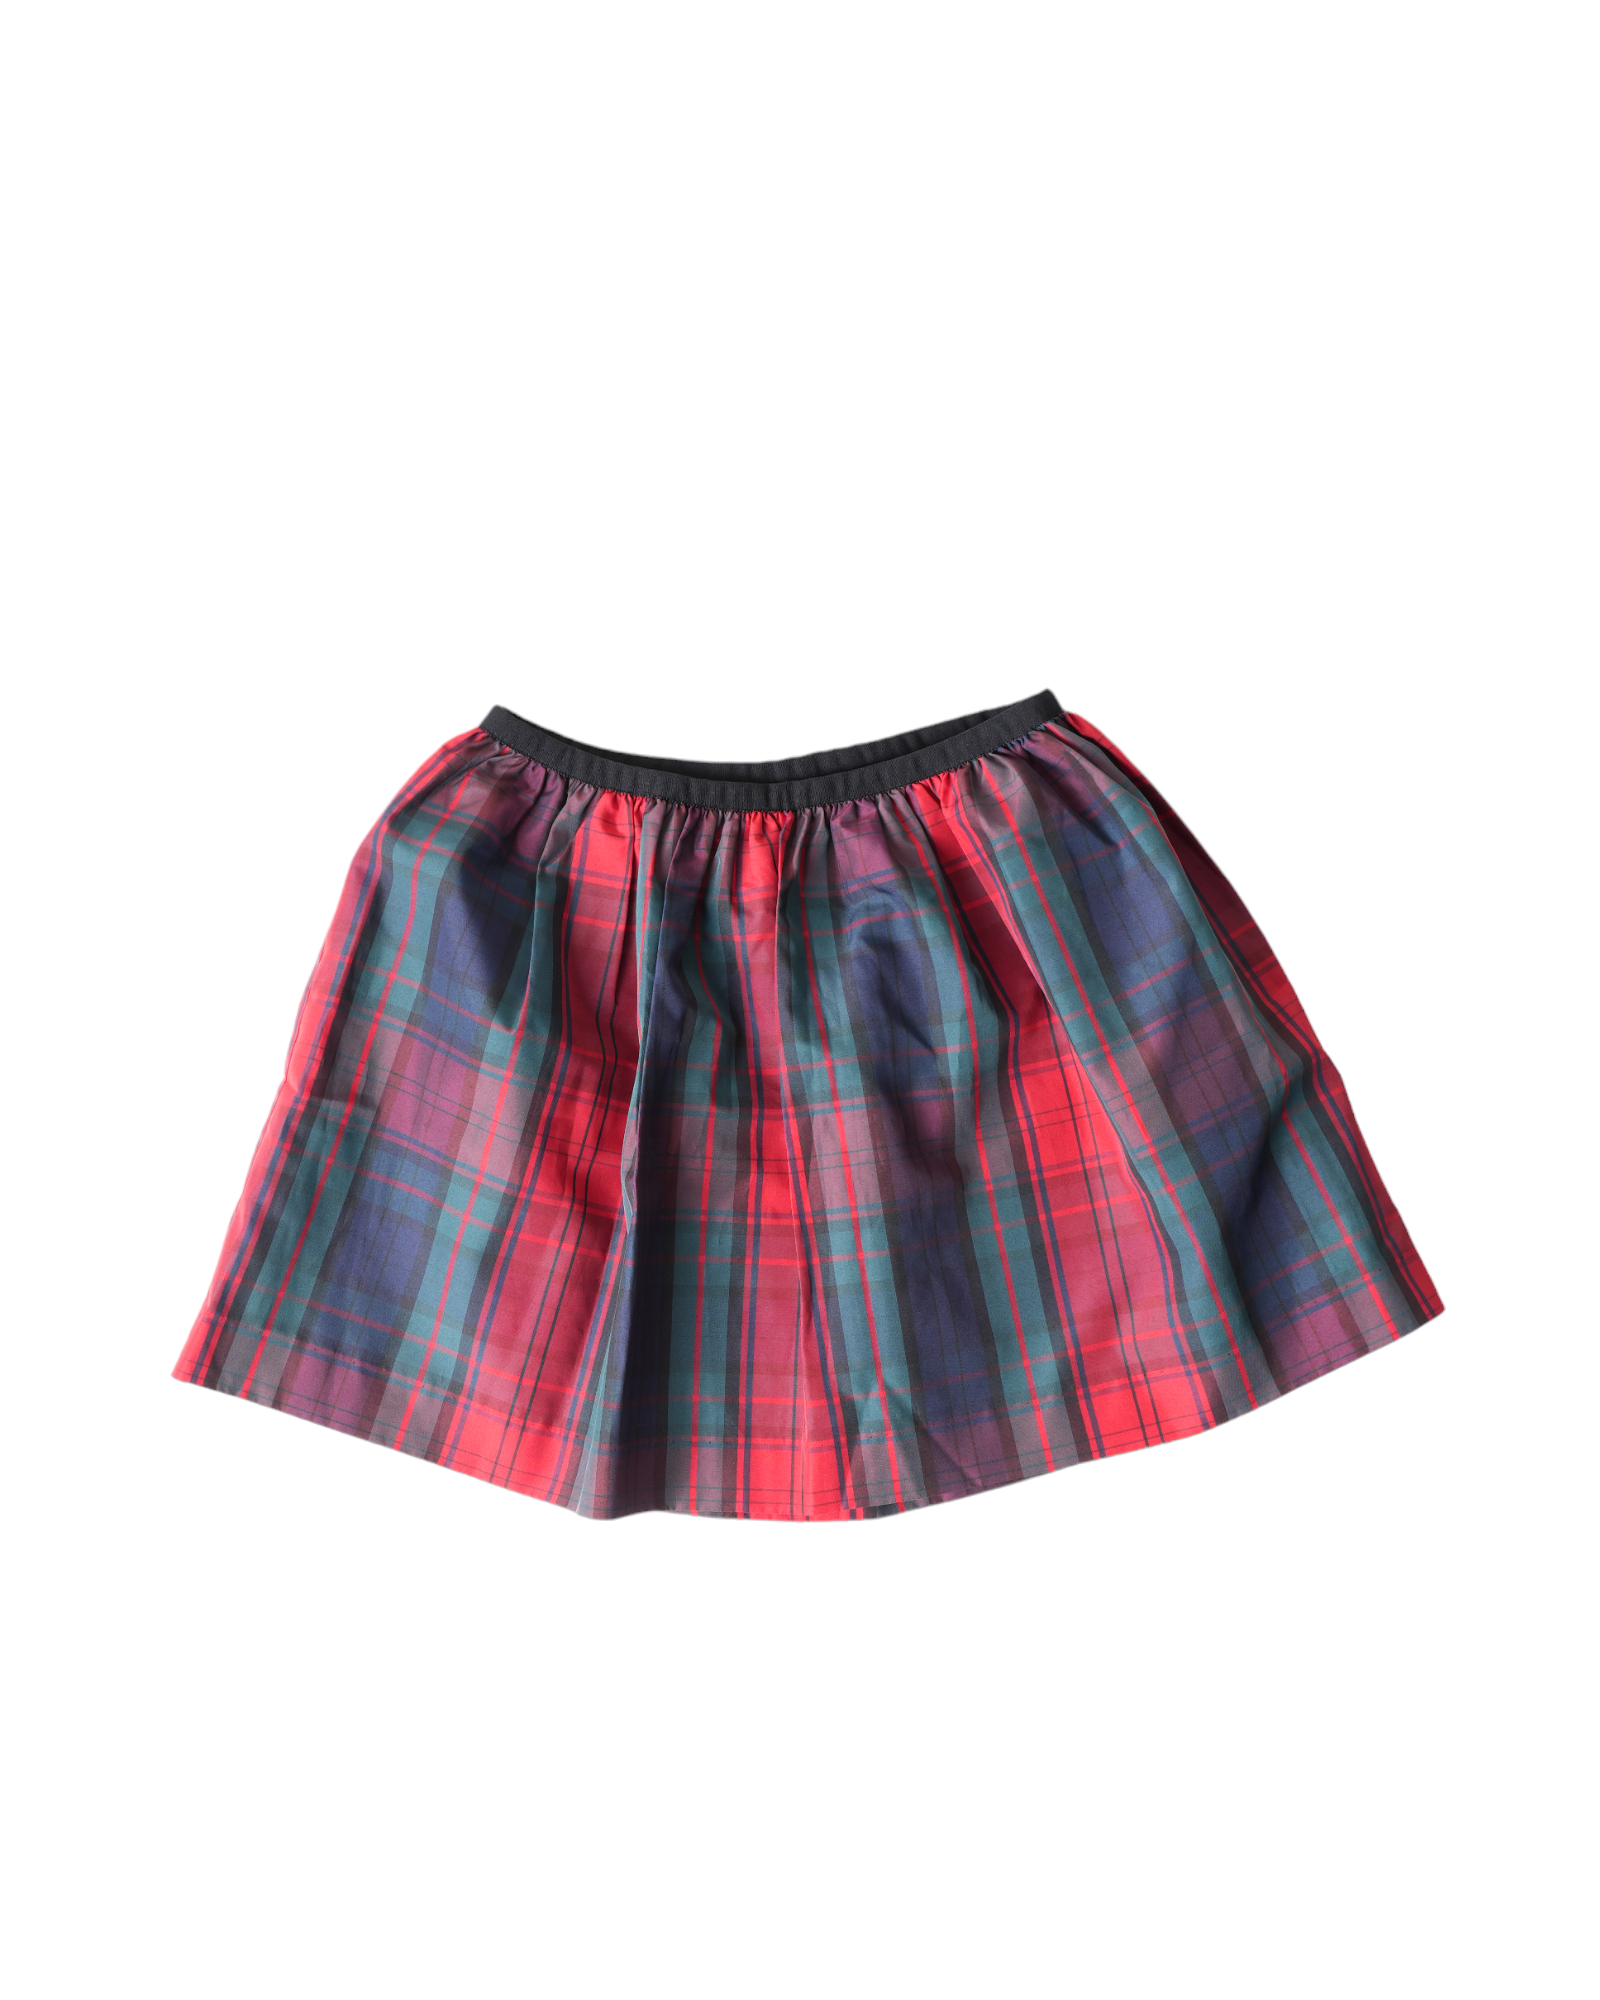 Polo Ralph Lauren Holiday Tartan Plaid Skirt